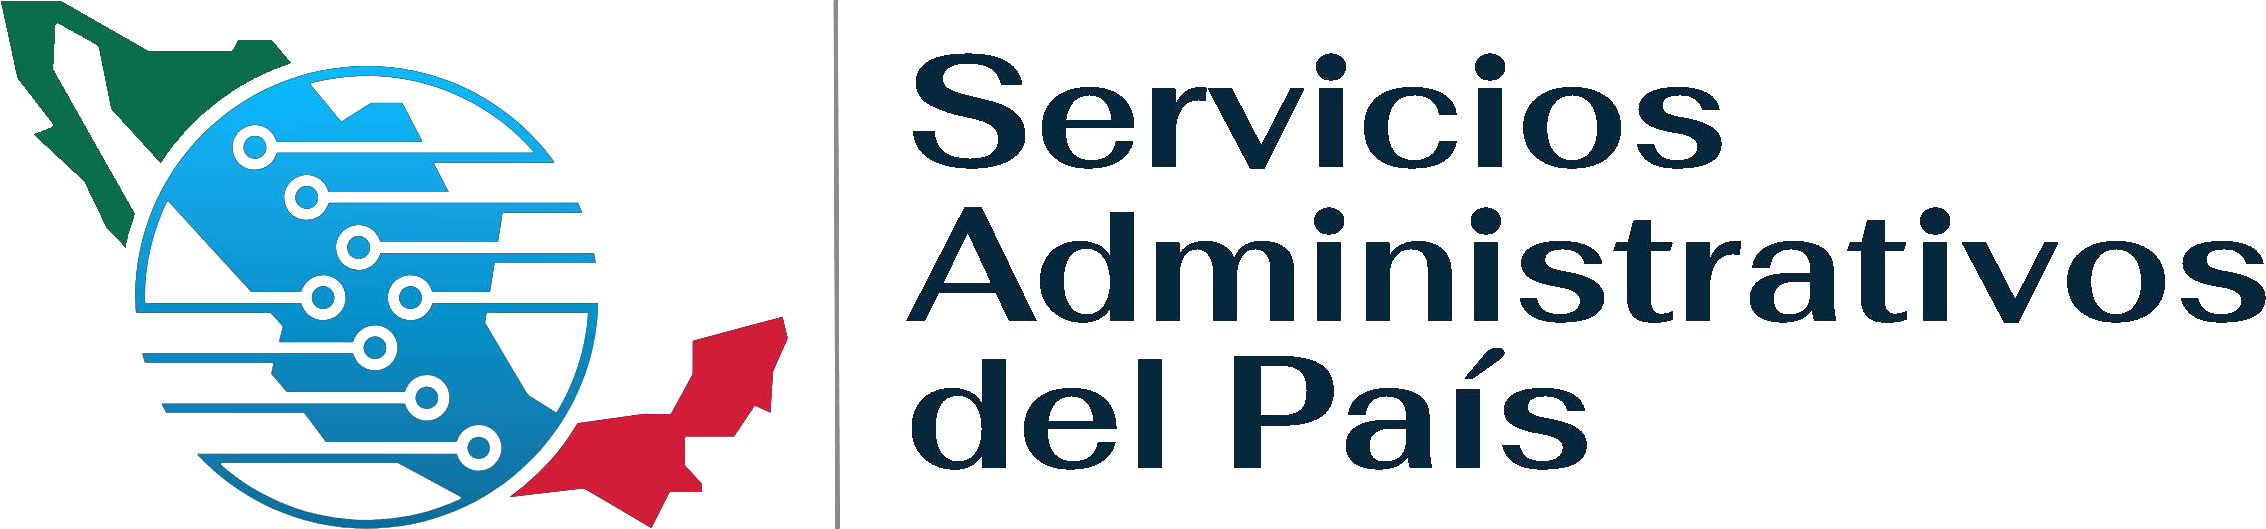 Servicios Administrativos del País